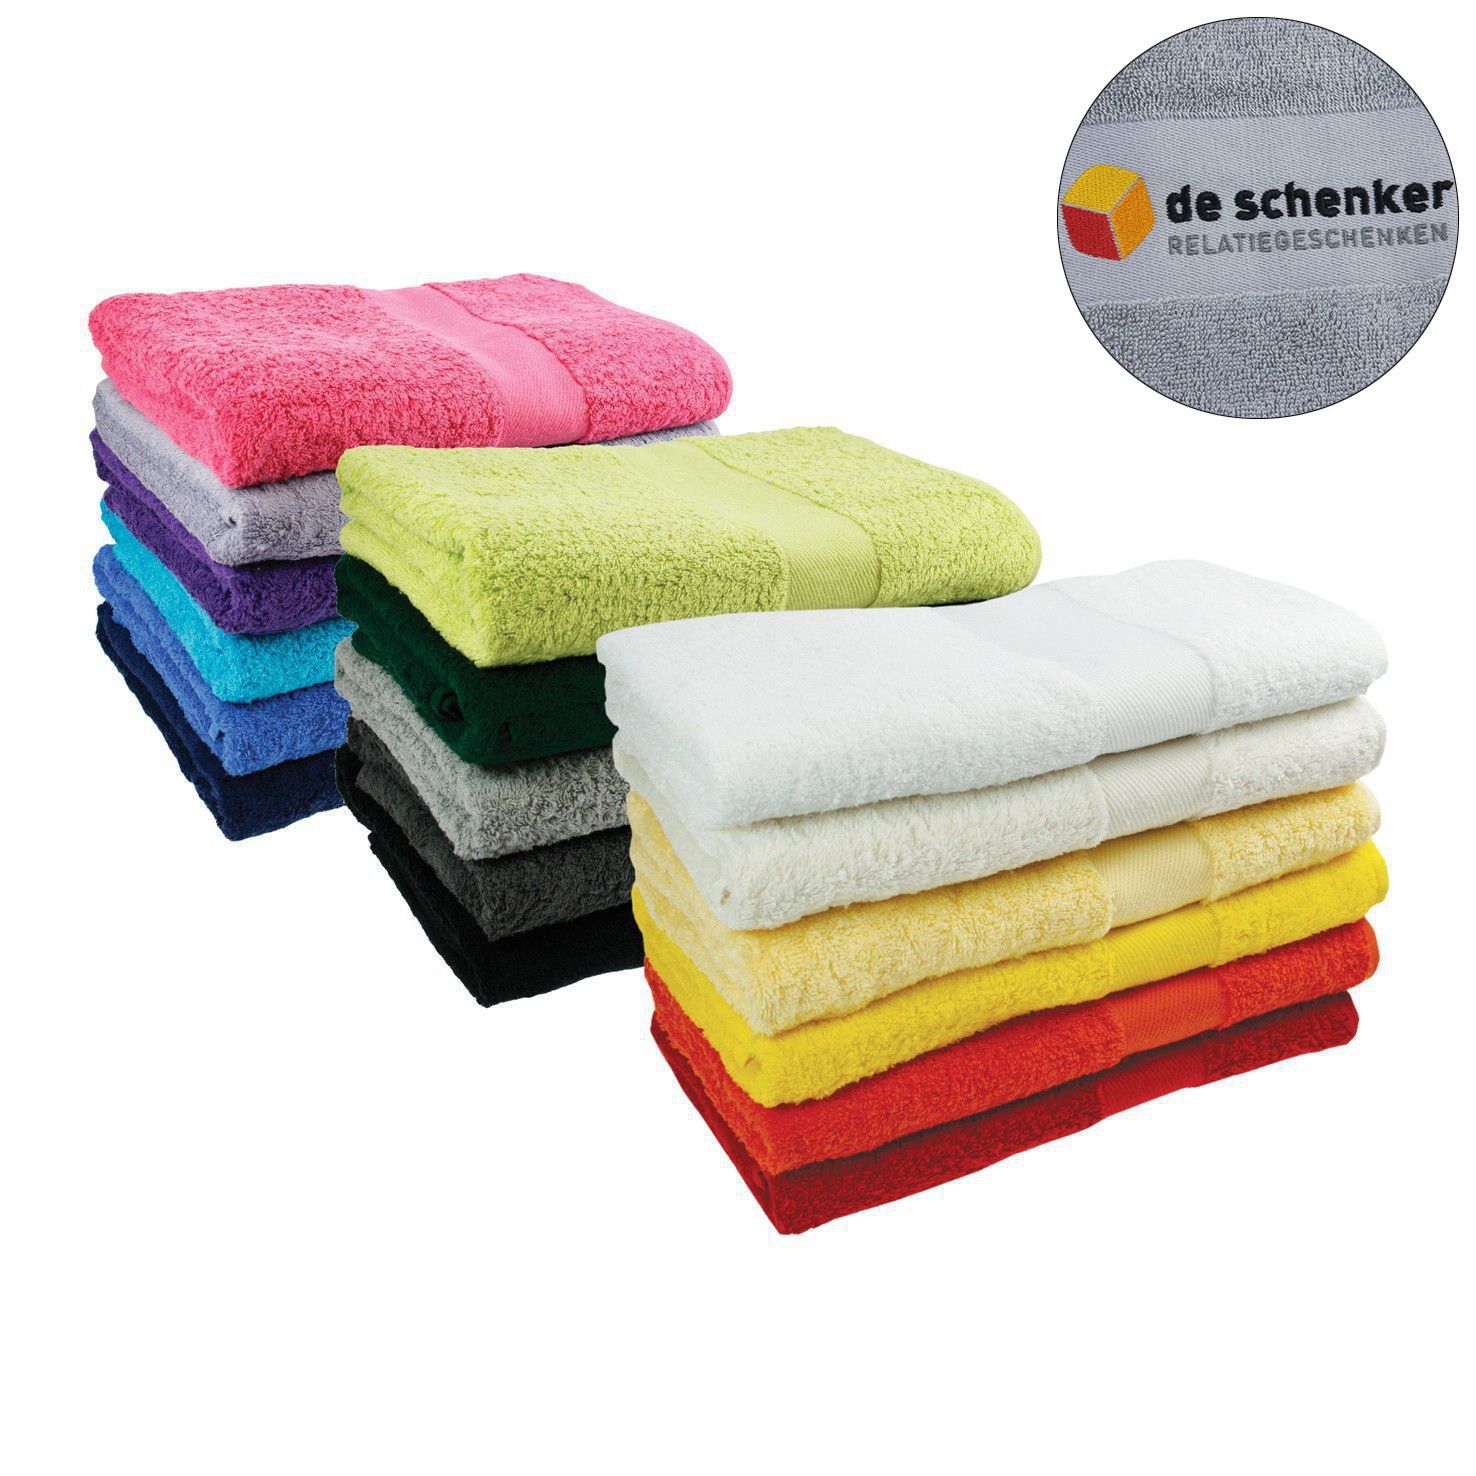 Handdoek borduren | 70 | 450 grams